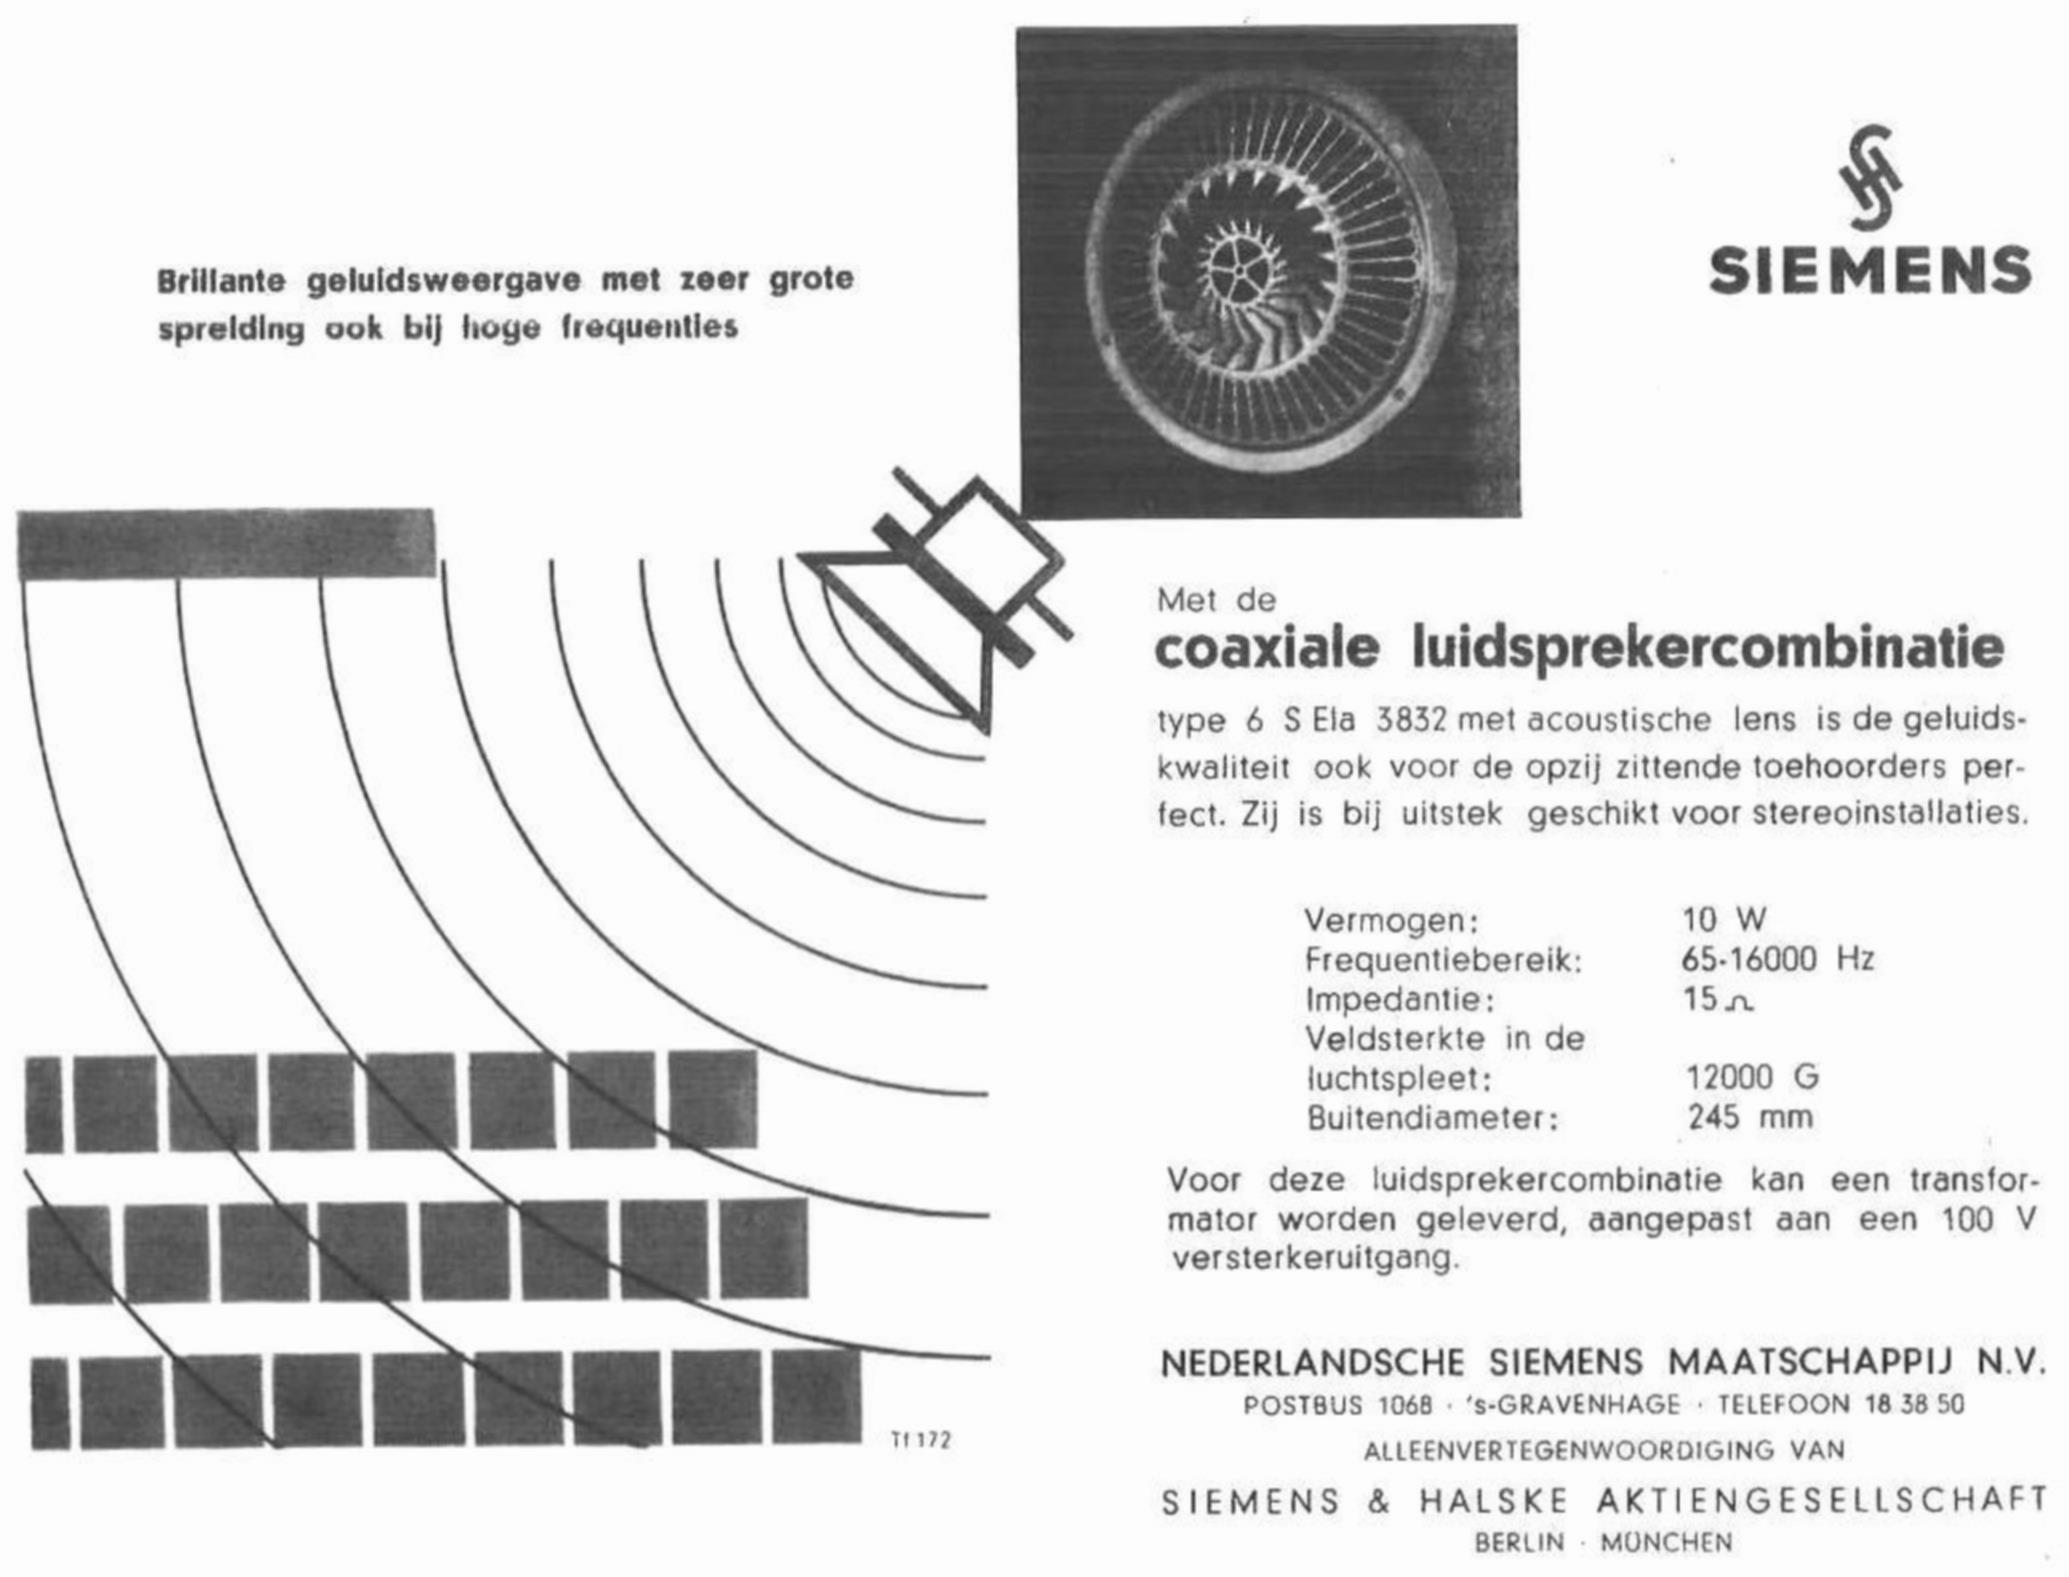 Siemens 1962 02.jpg